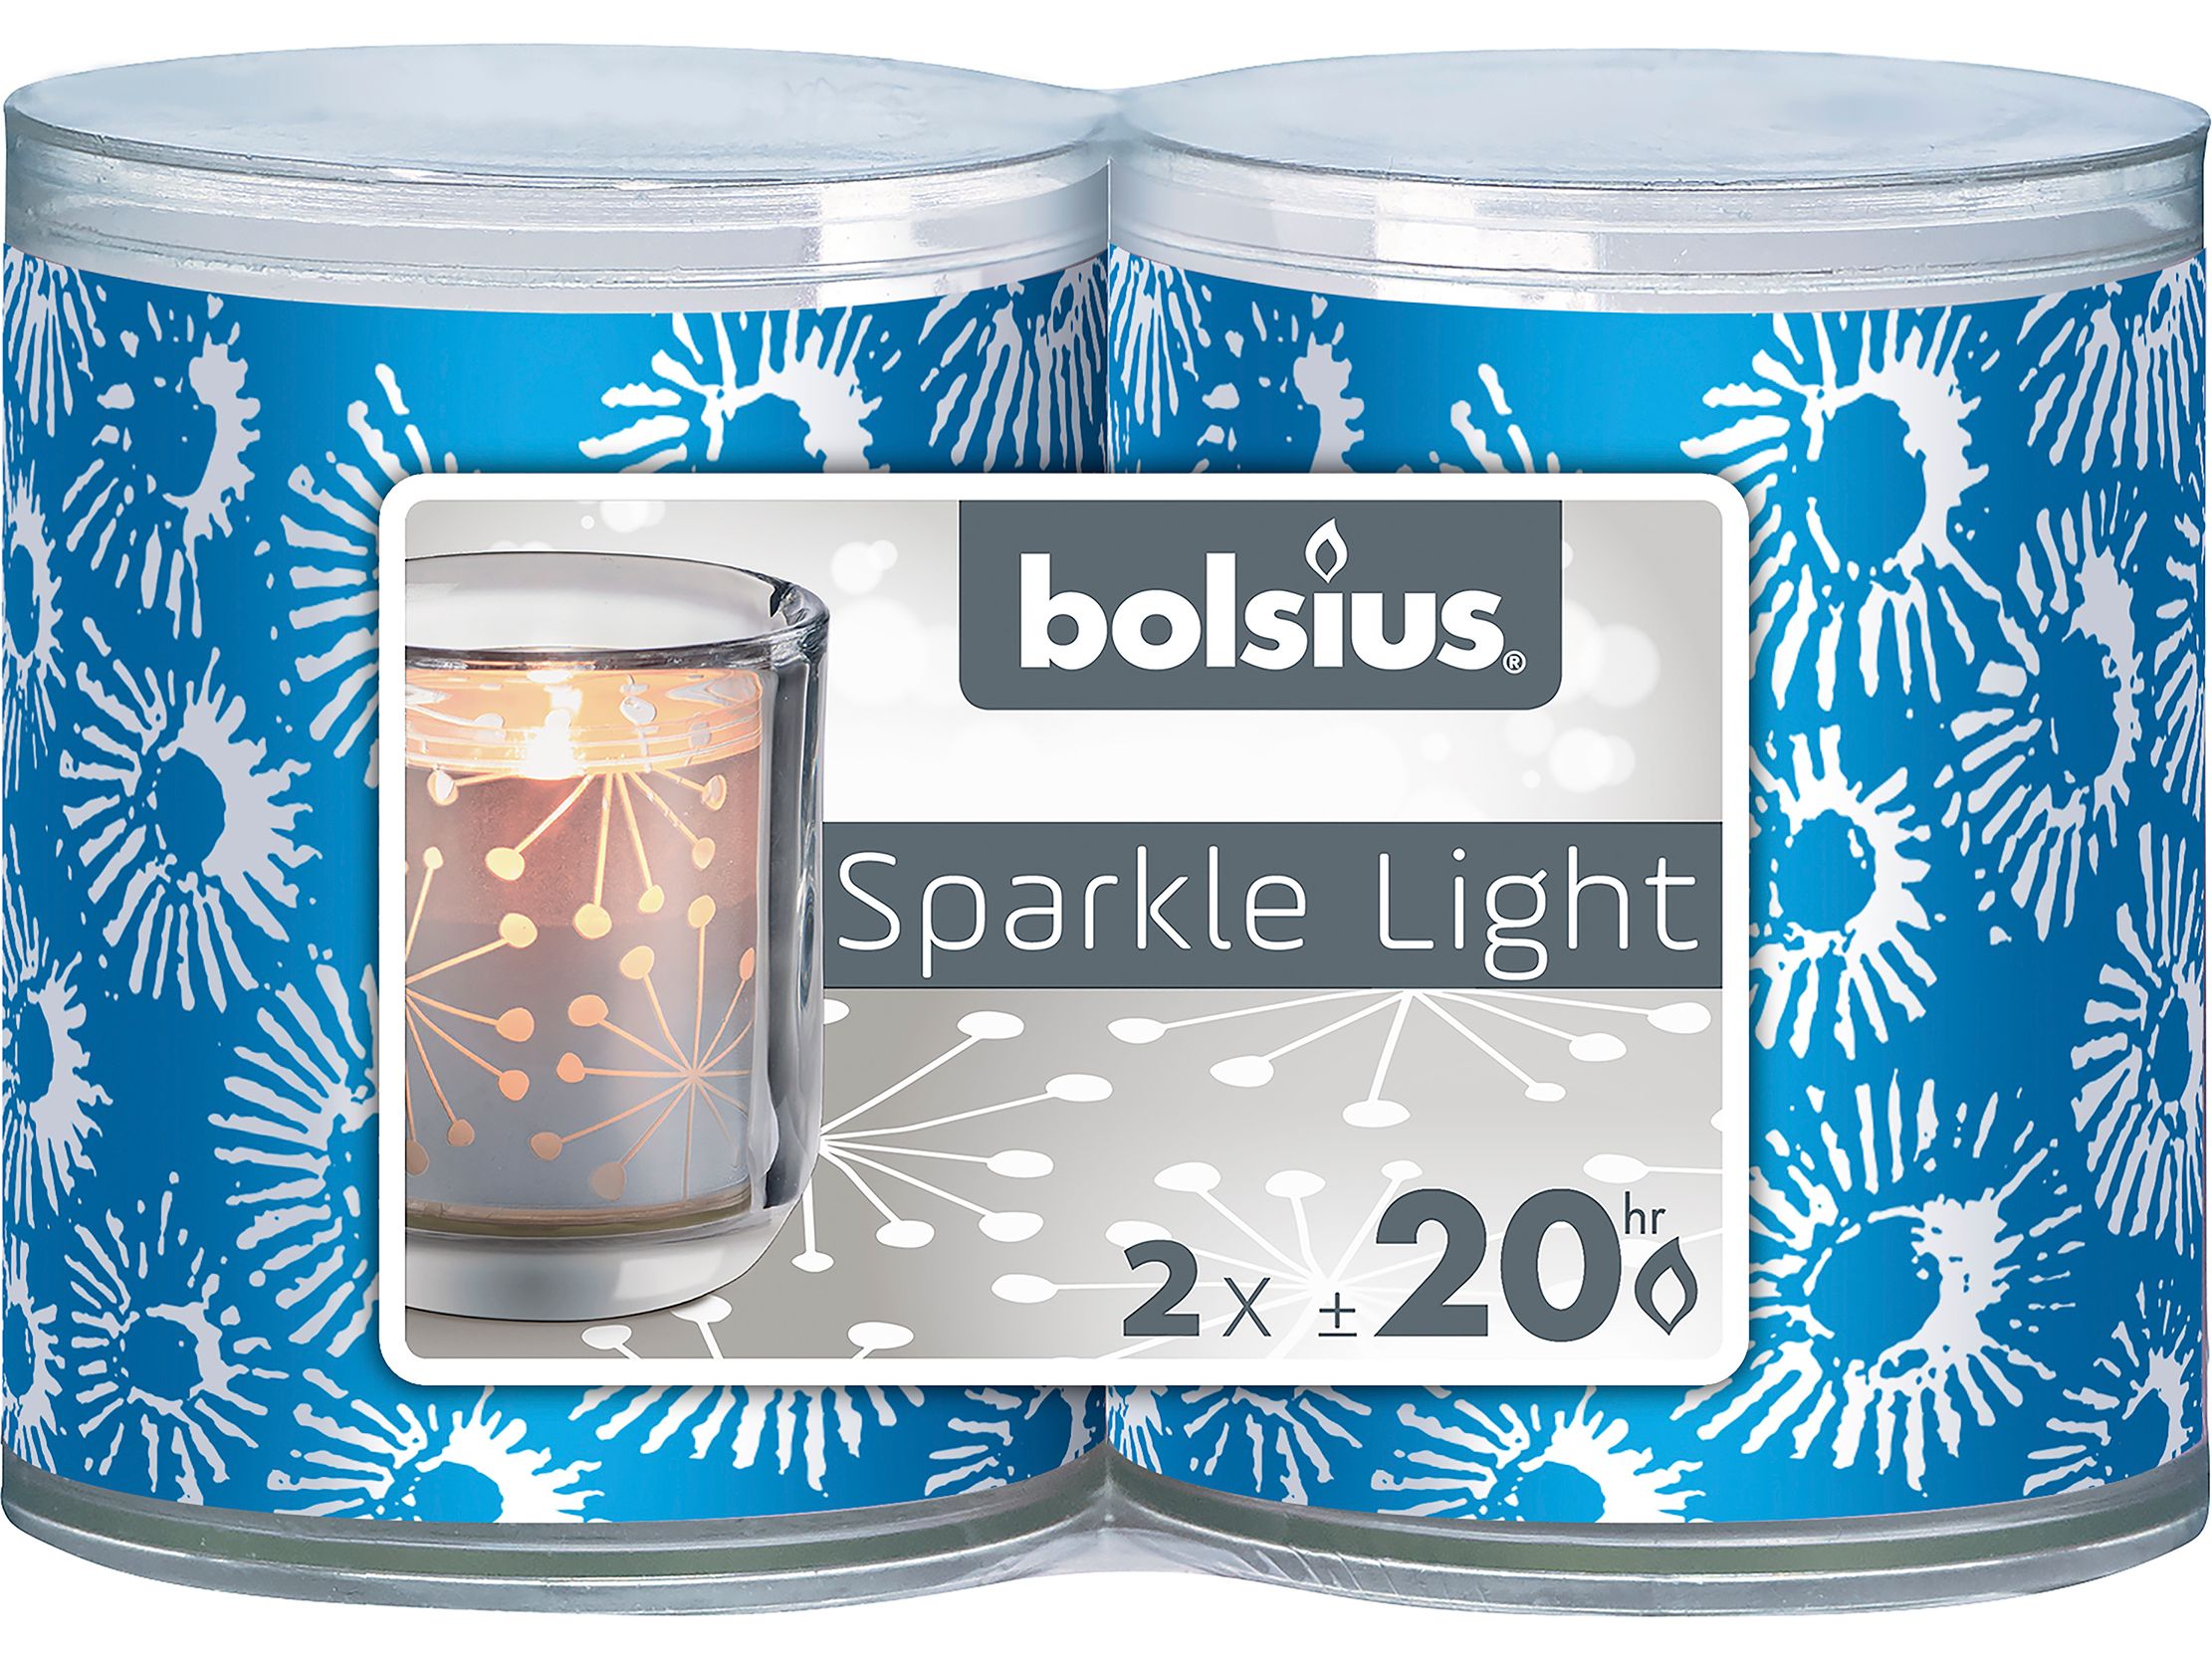 16x-swieczka-bolsius-sparkle-light-52x64-cm